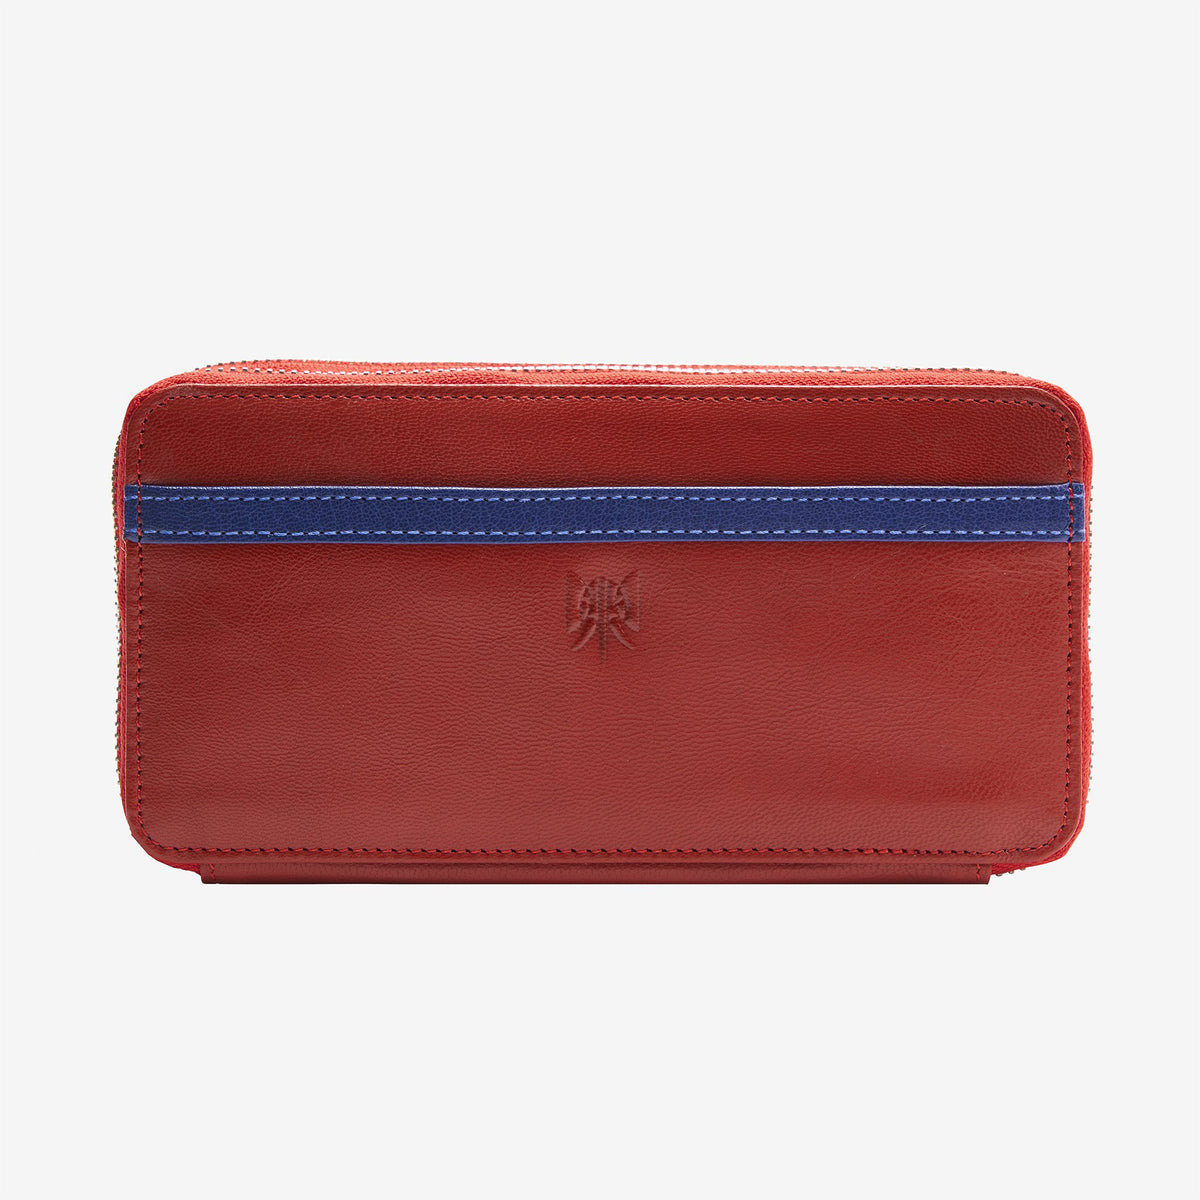 Quality Ladies Soft Leather Medium Purse Wallet by Visconti; Spectrum  Collection Boxed | Geldbörse, Geldbörse für frauen, Weiches leder